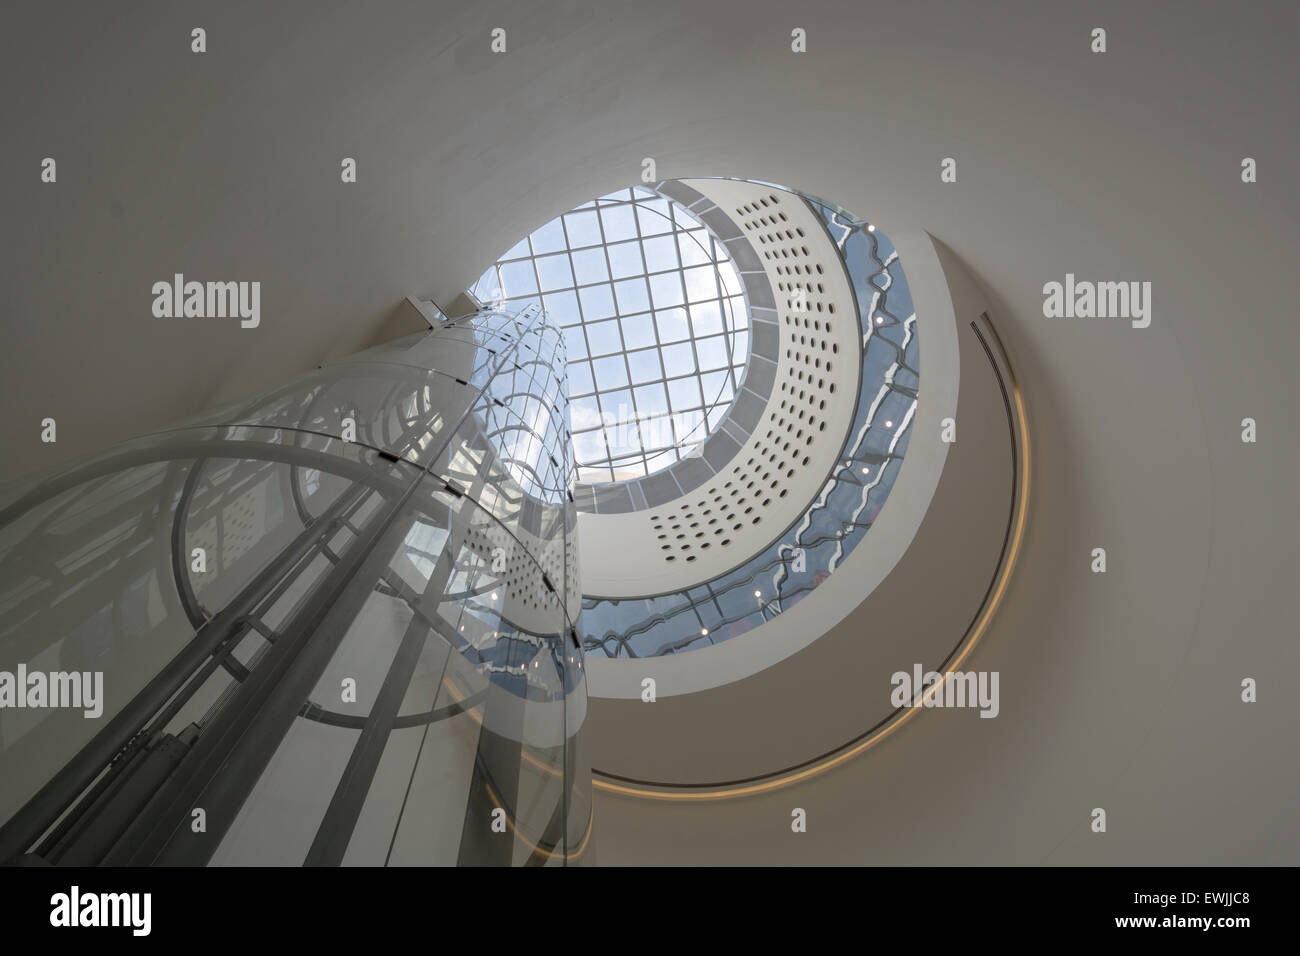 Glasaufzug oder Aufzug im Inneren der Library of Birmingham. Dieses Stück der modernen Architektur ist Teil der Stadt Sanierung. Stockfoto